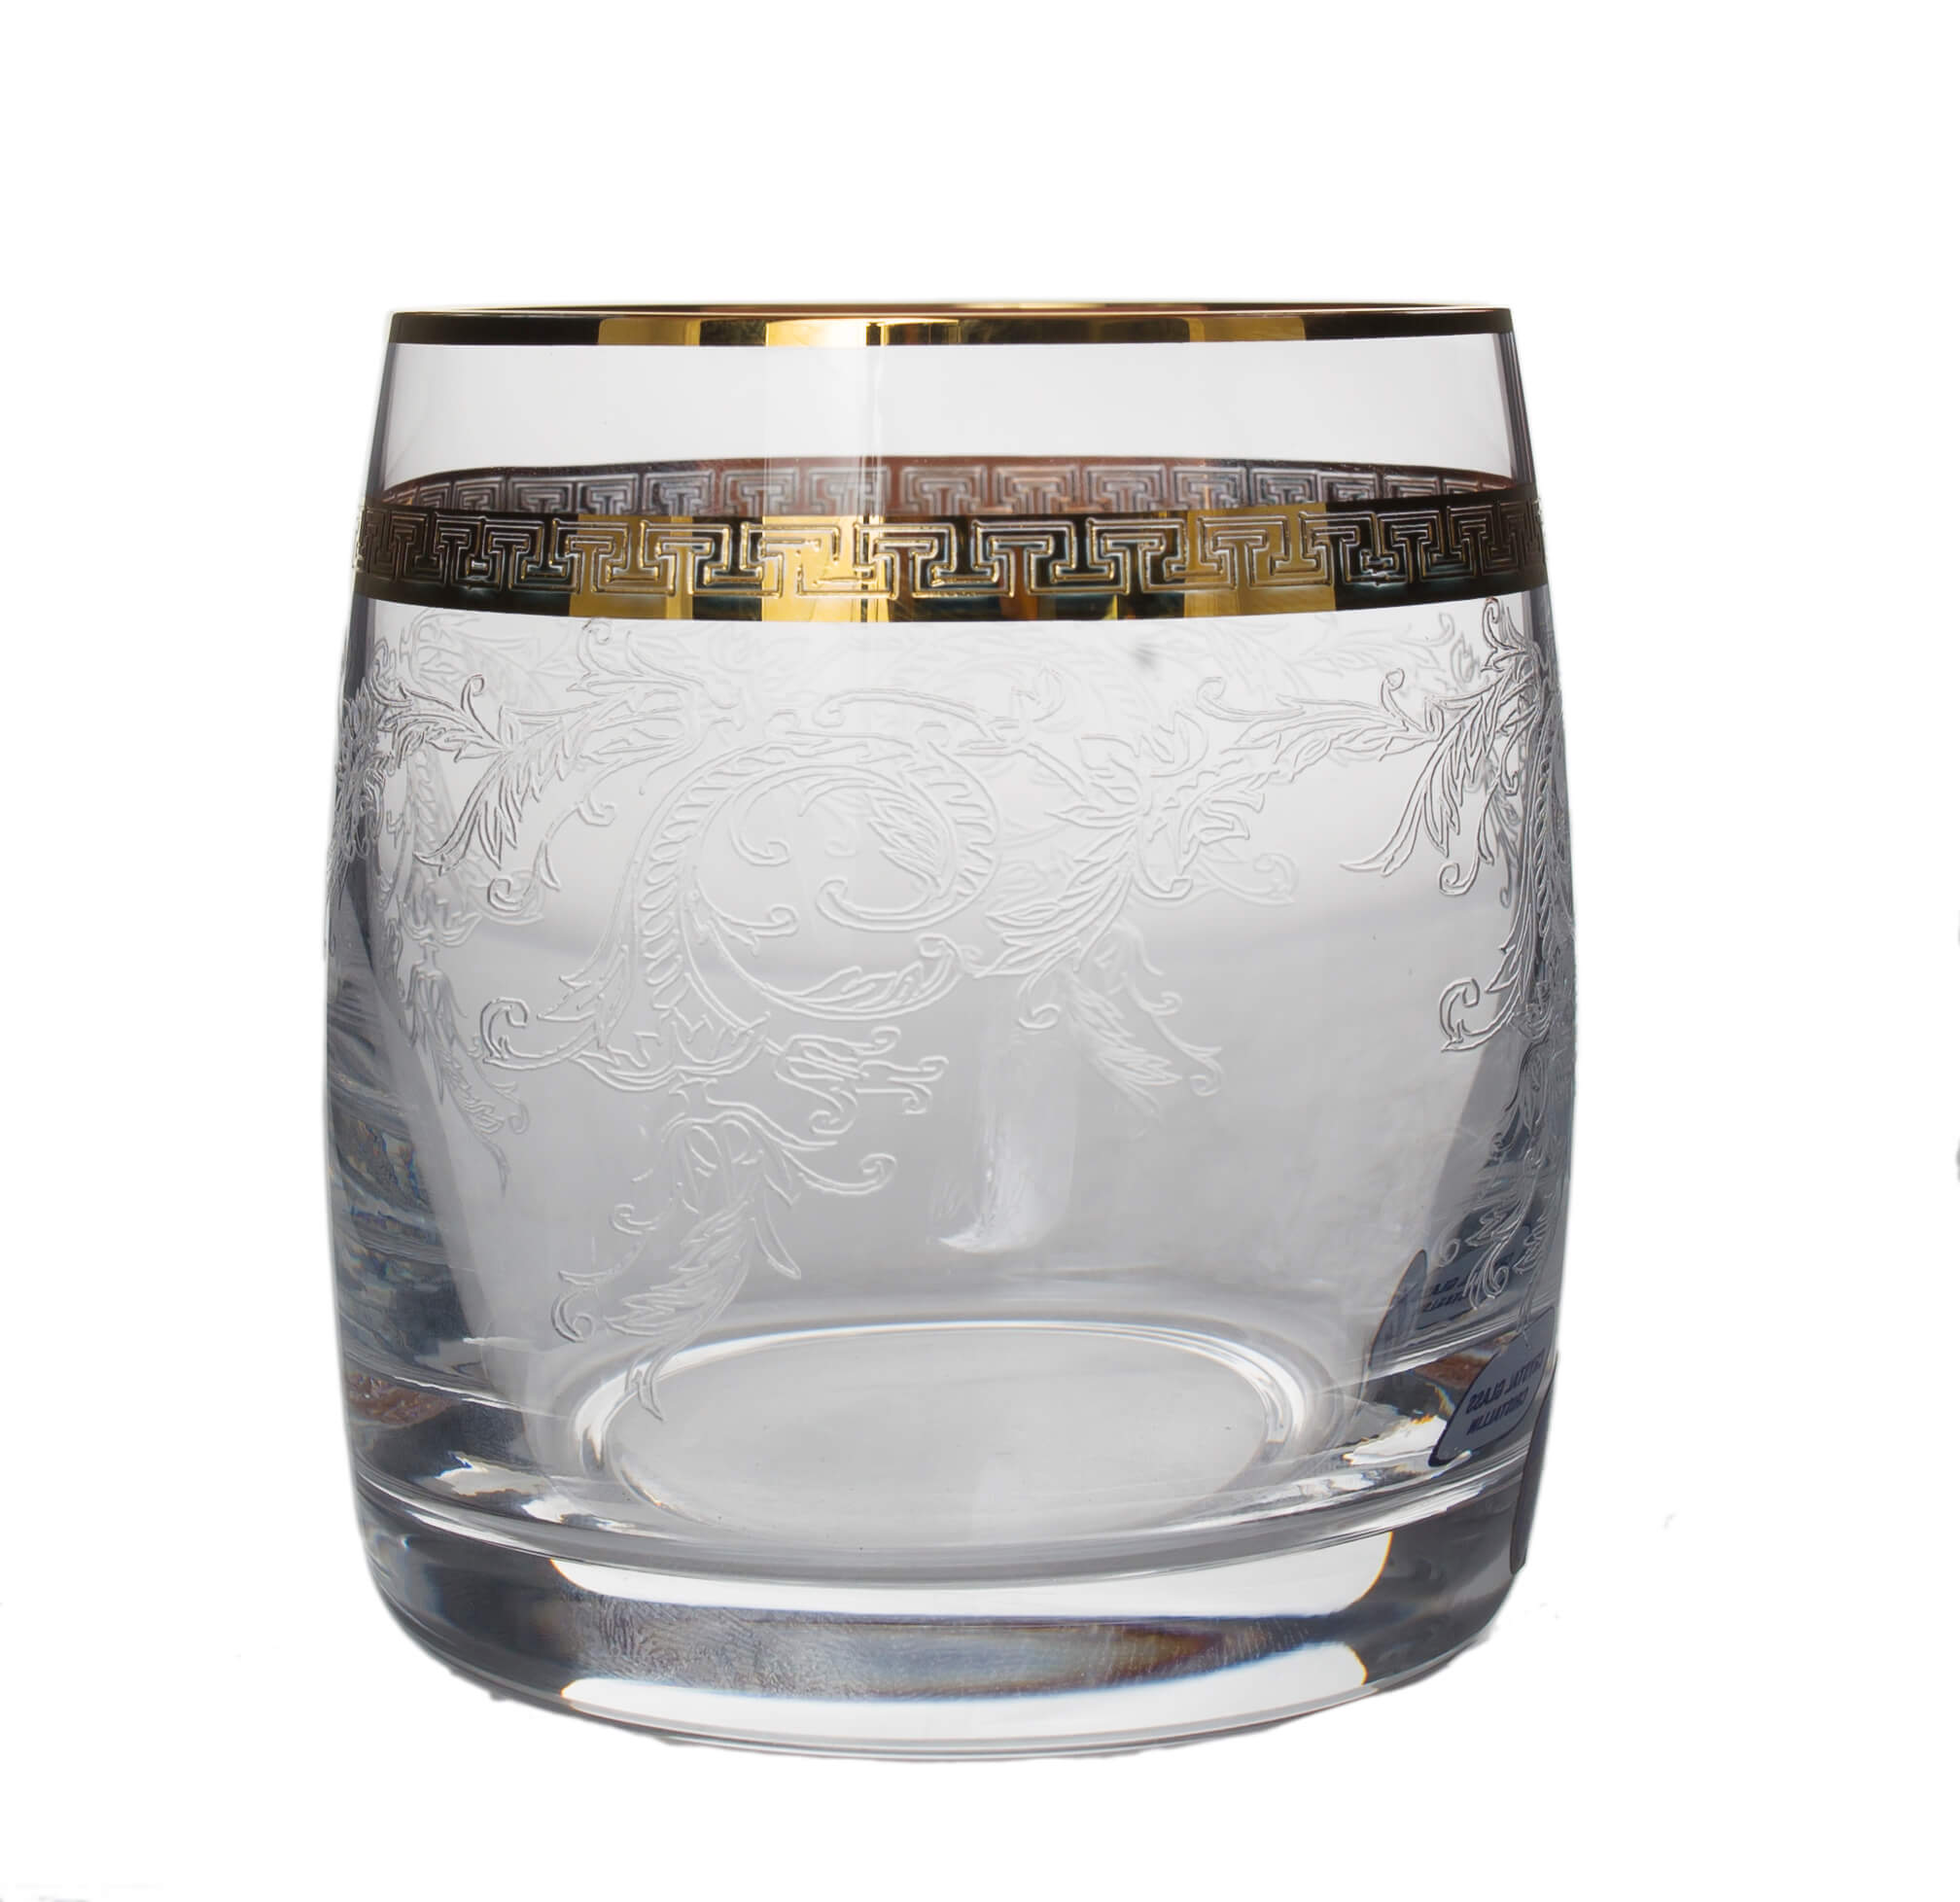 GIULIA decor aur - Set 6 pahare cristalin whisky 290 ml